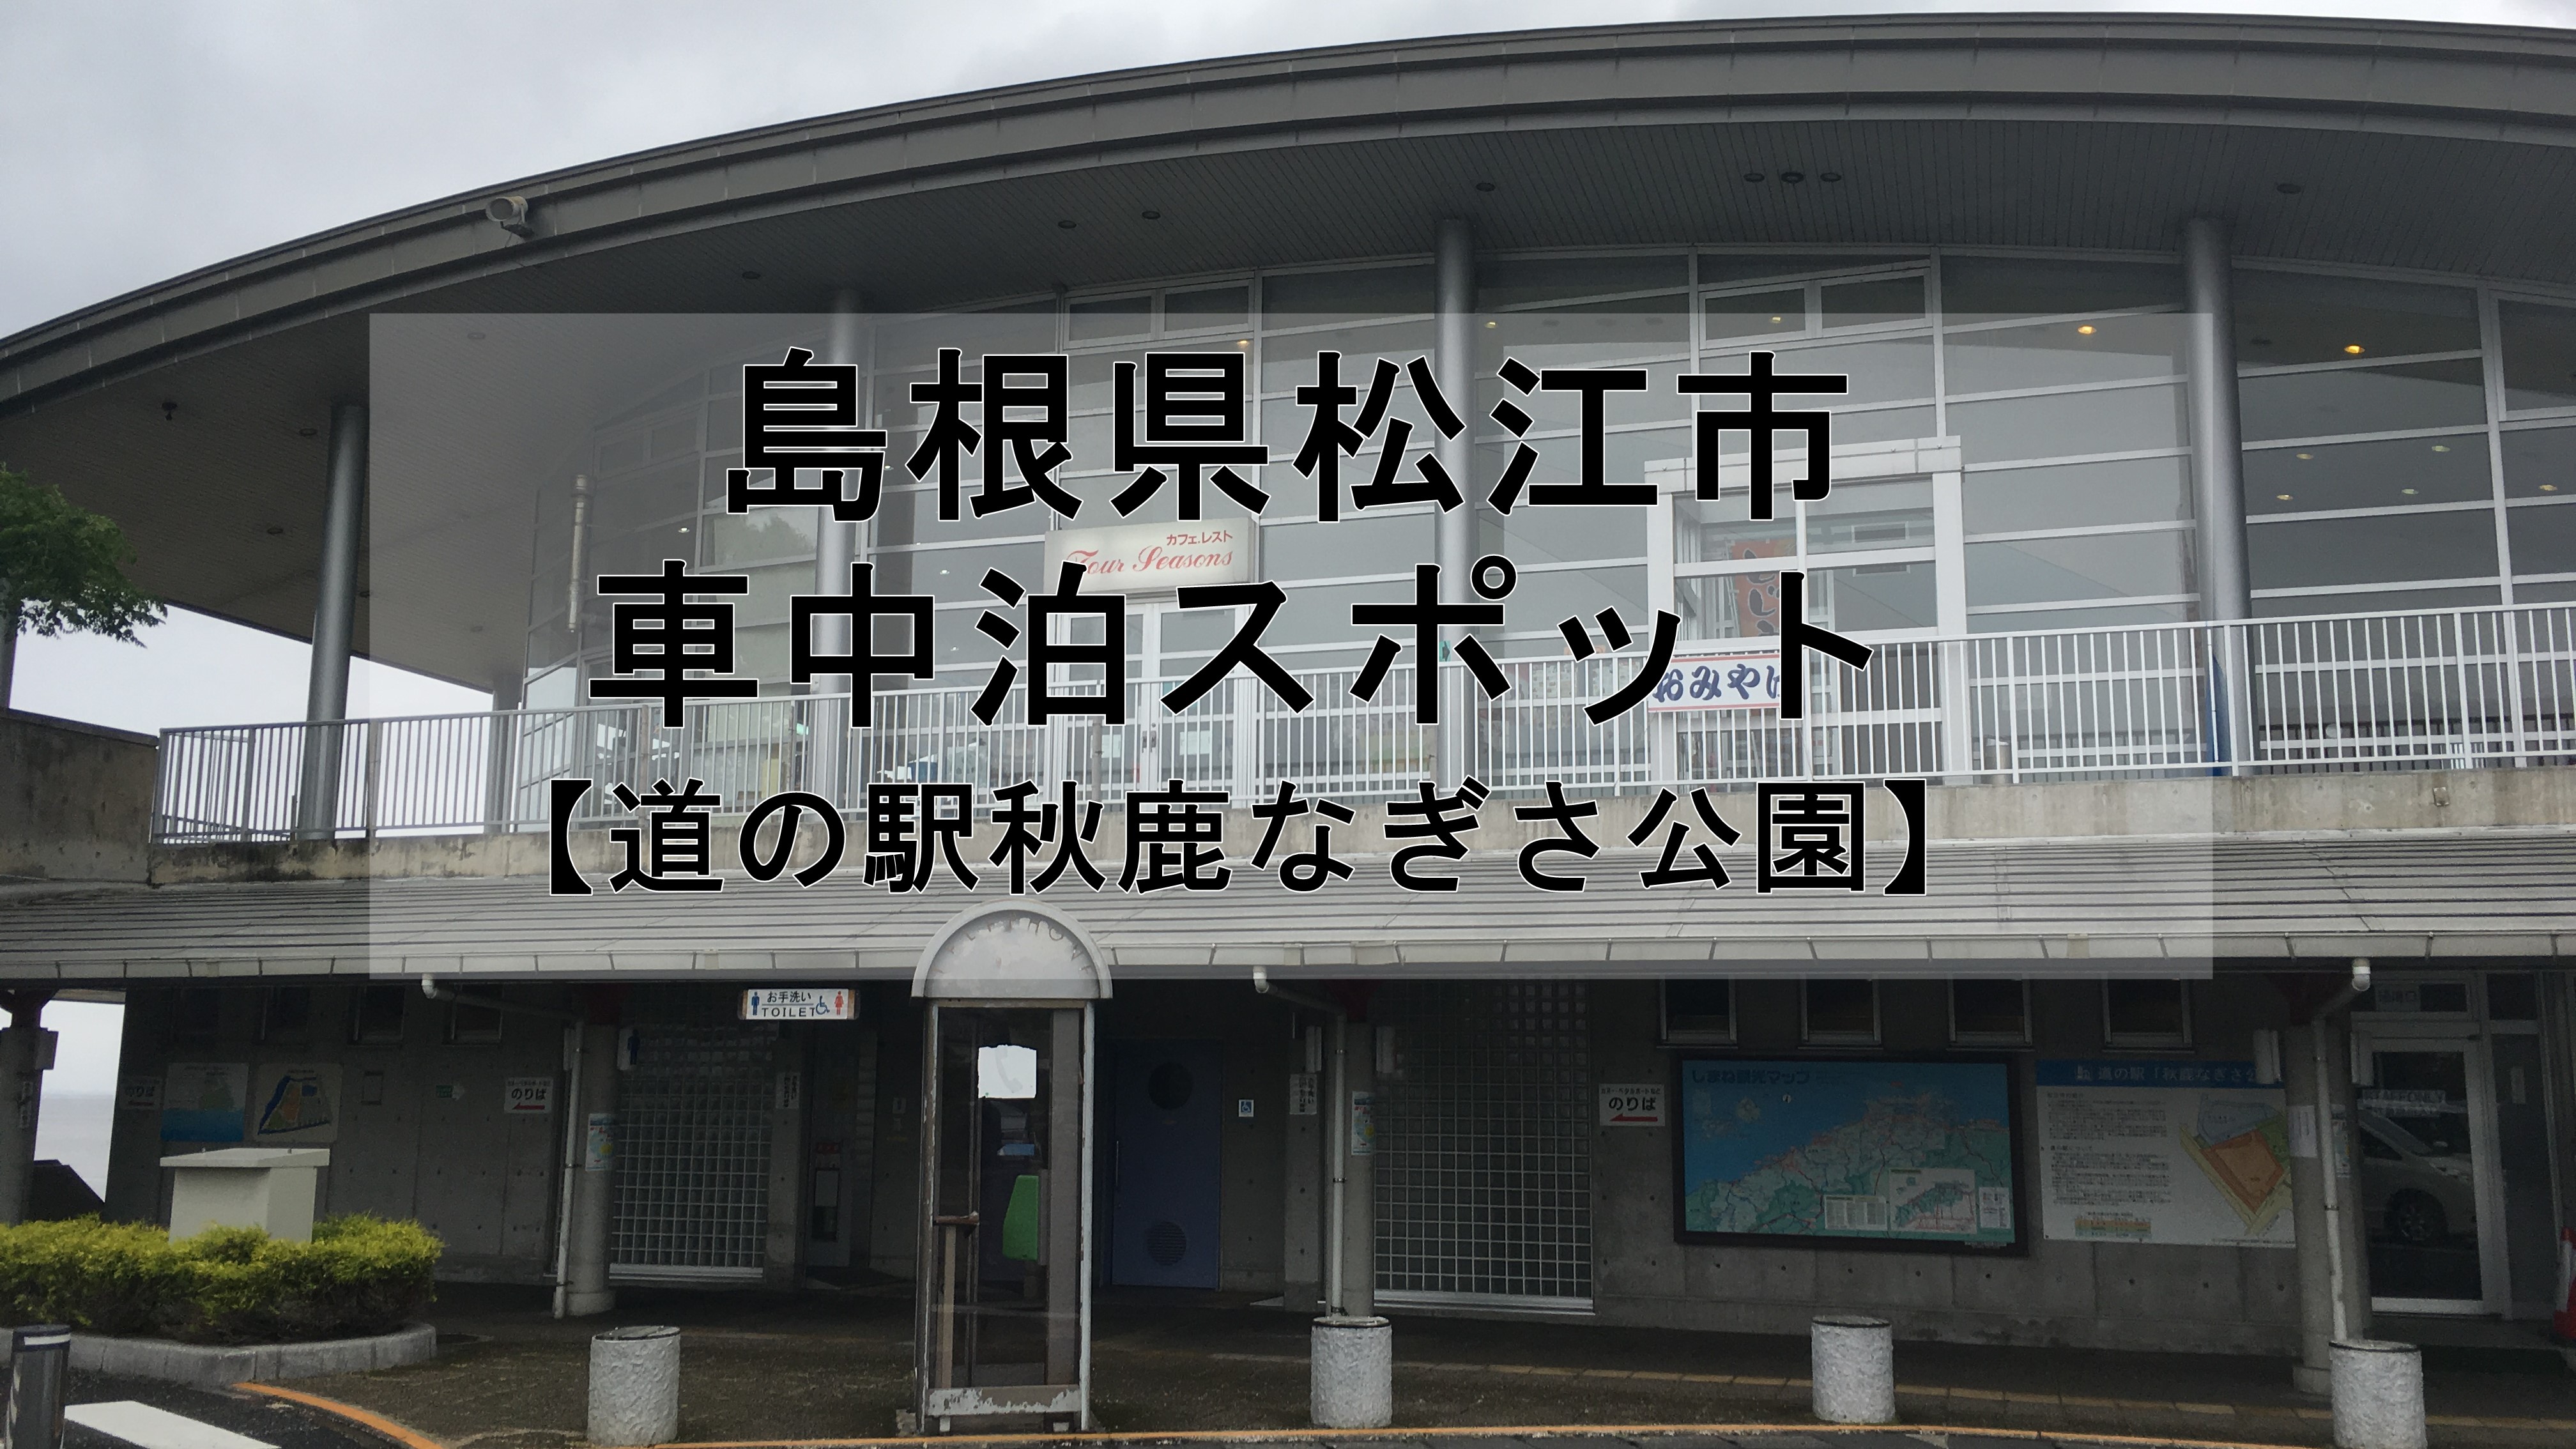 島根県松江市 道の駅秋鹿なぎさ公園 で車中泊は可能か 車中泊初心者向けバンライフブログ